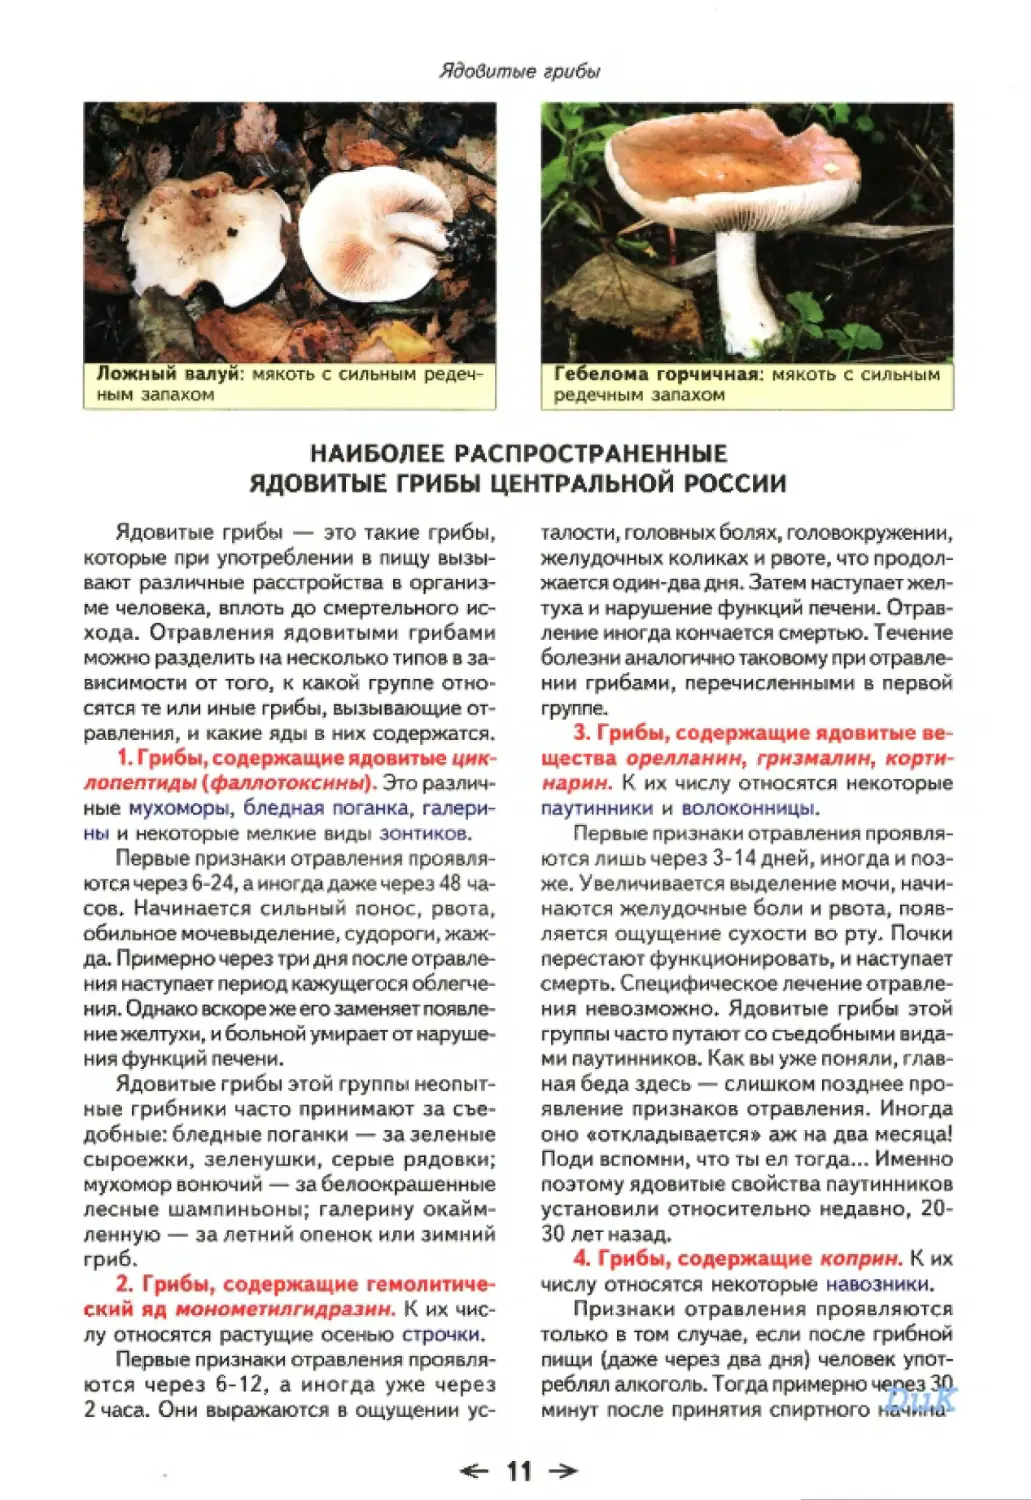 Наиболее распространенные ядовитые грибы Центральной России